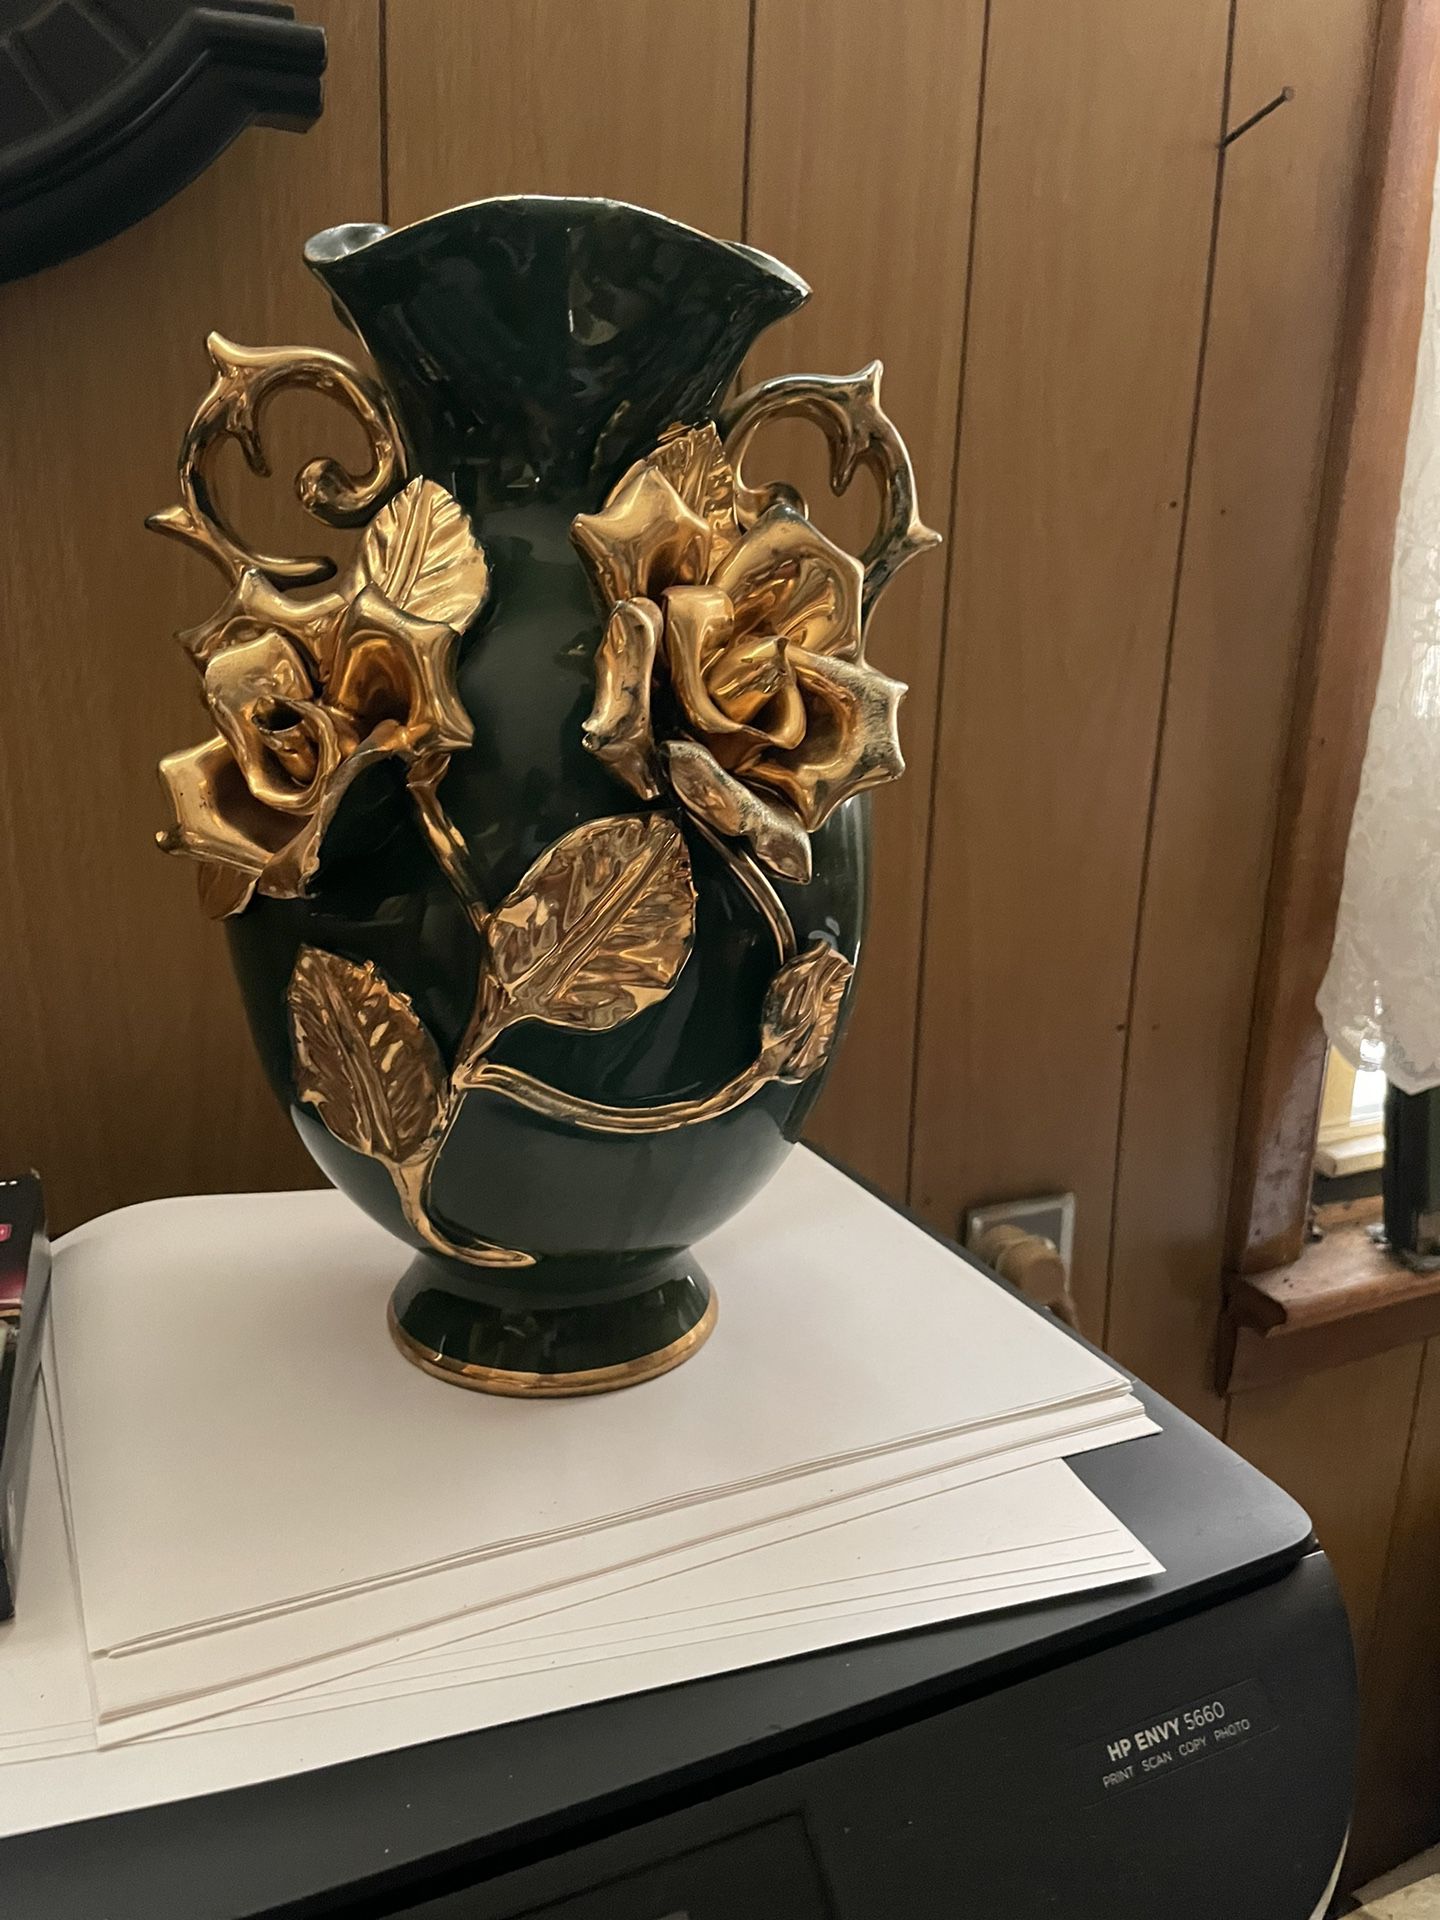 Green flower vase